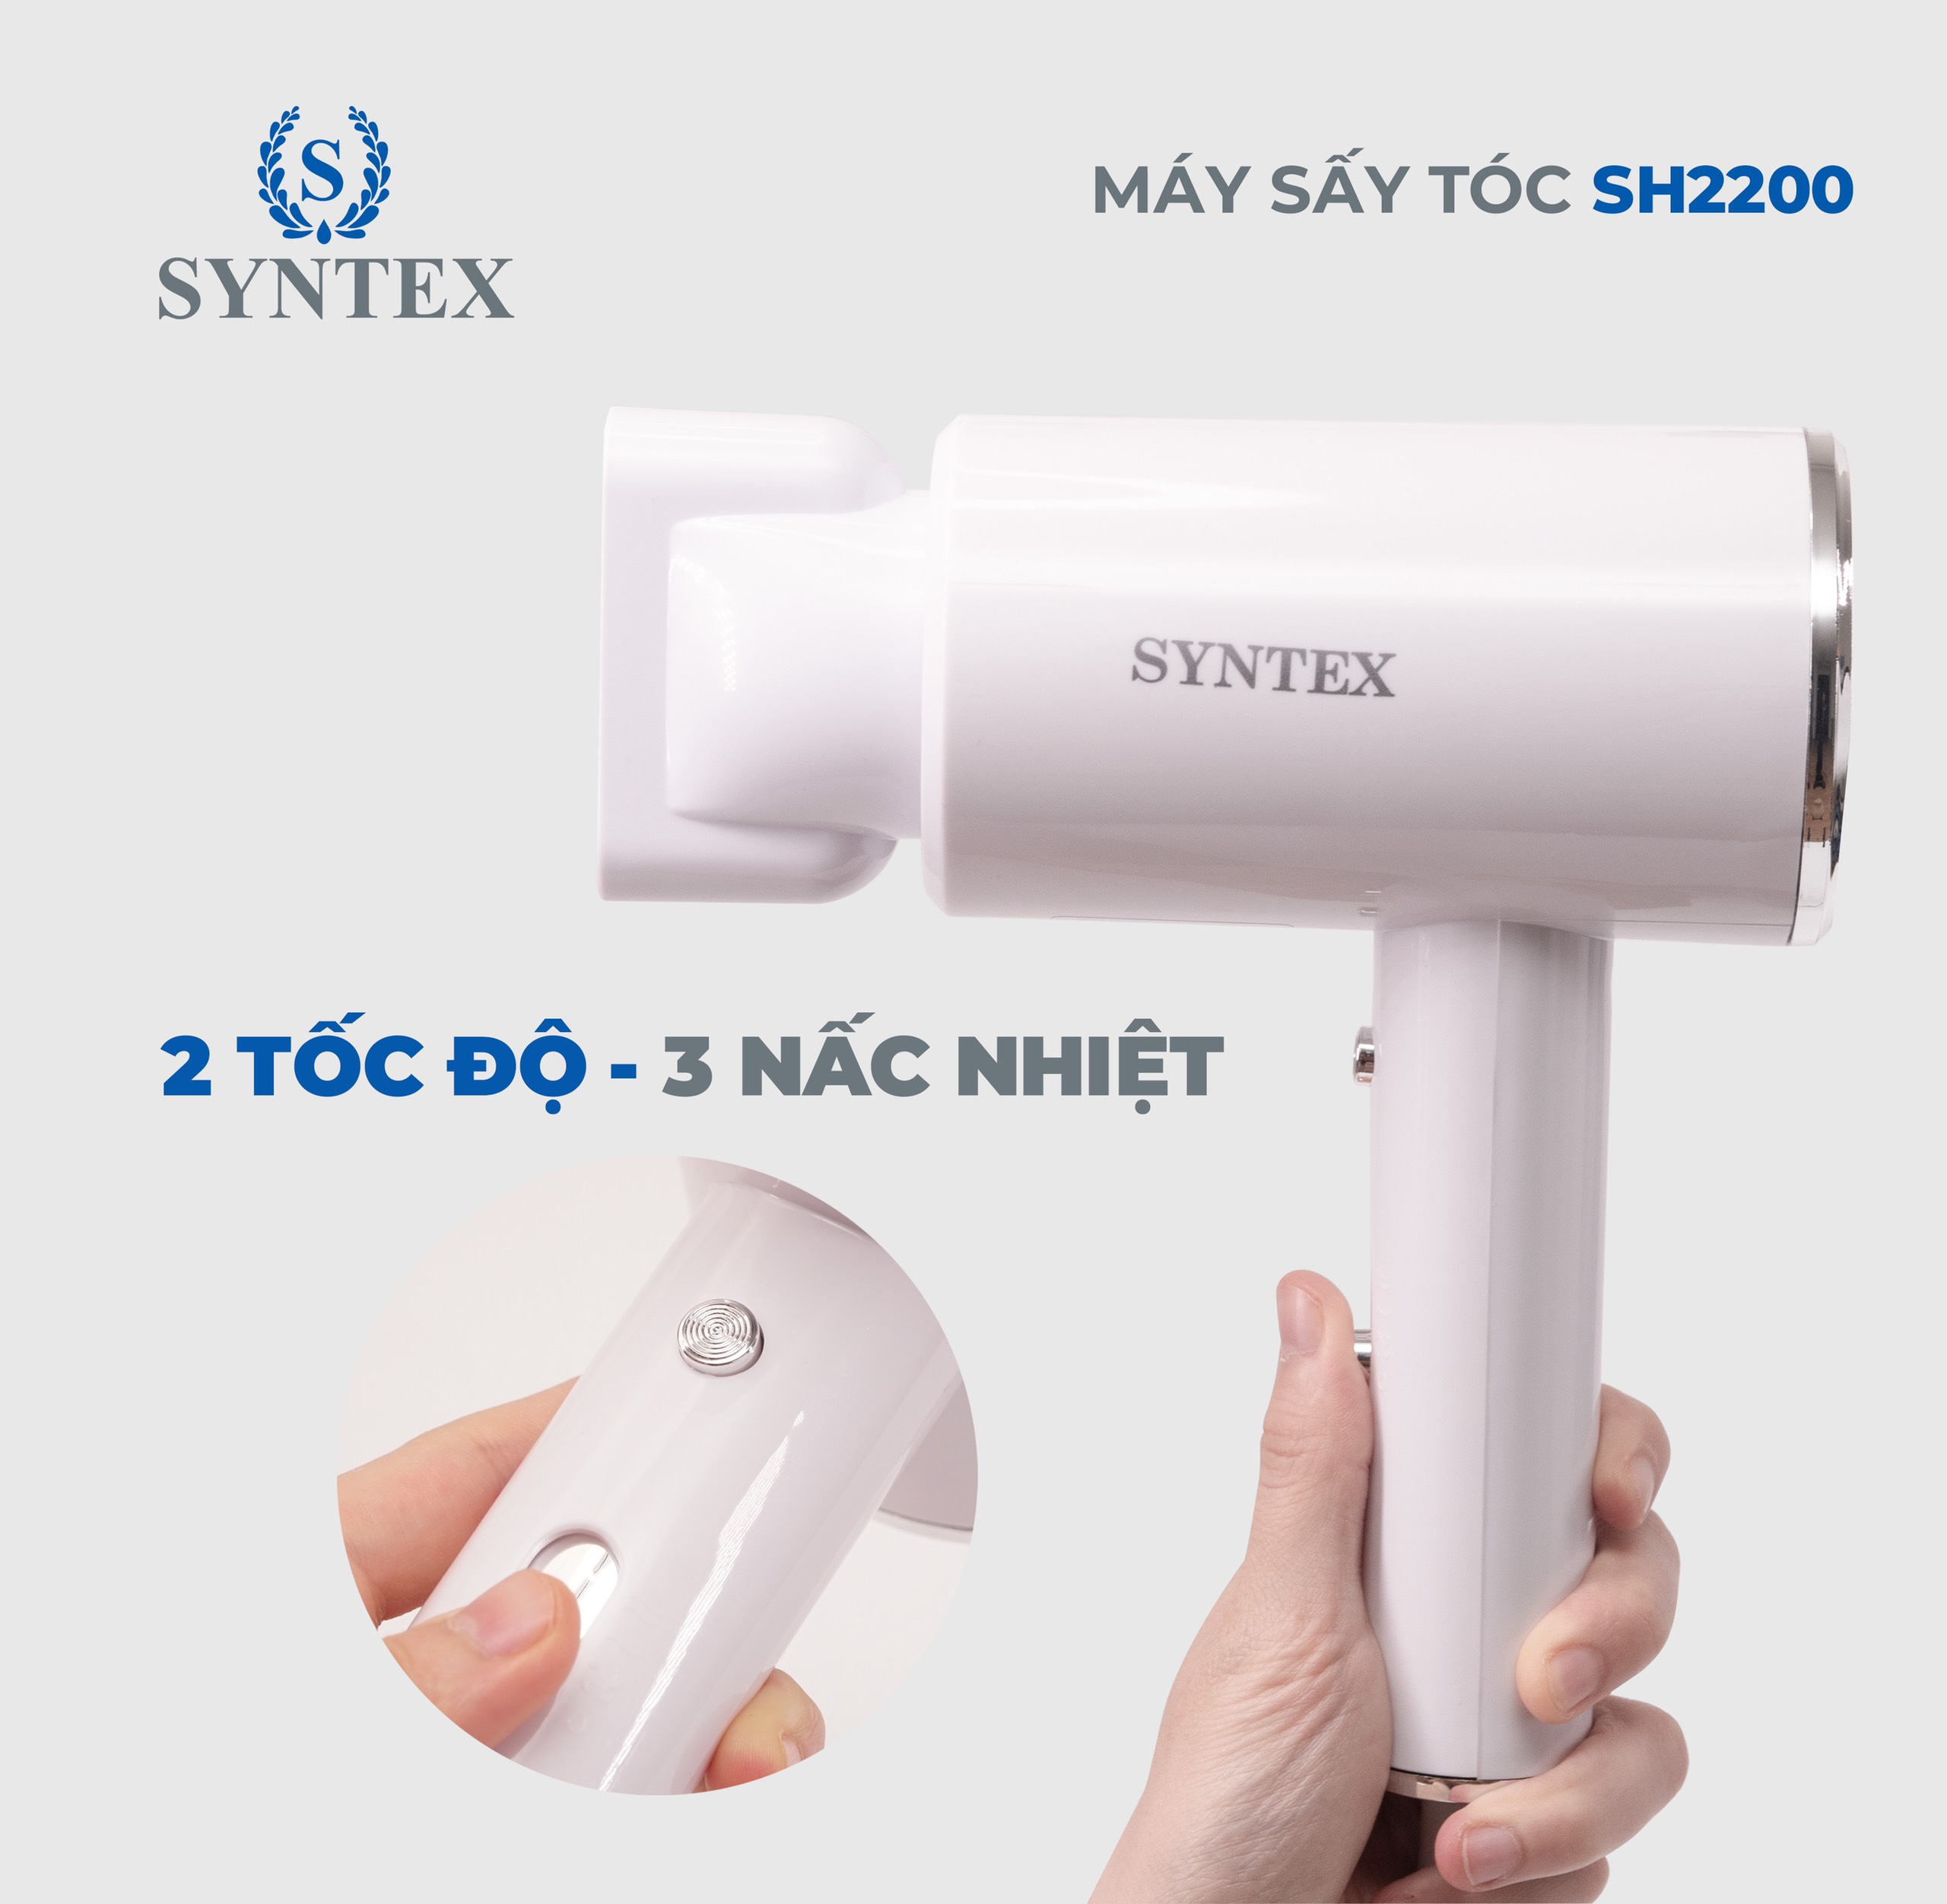 Máy sấy tóc cao cấp Syntex SH2200, bảo hành 12 tháng